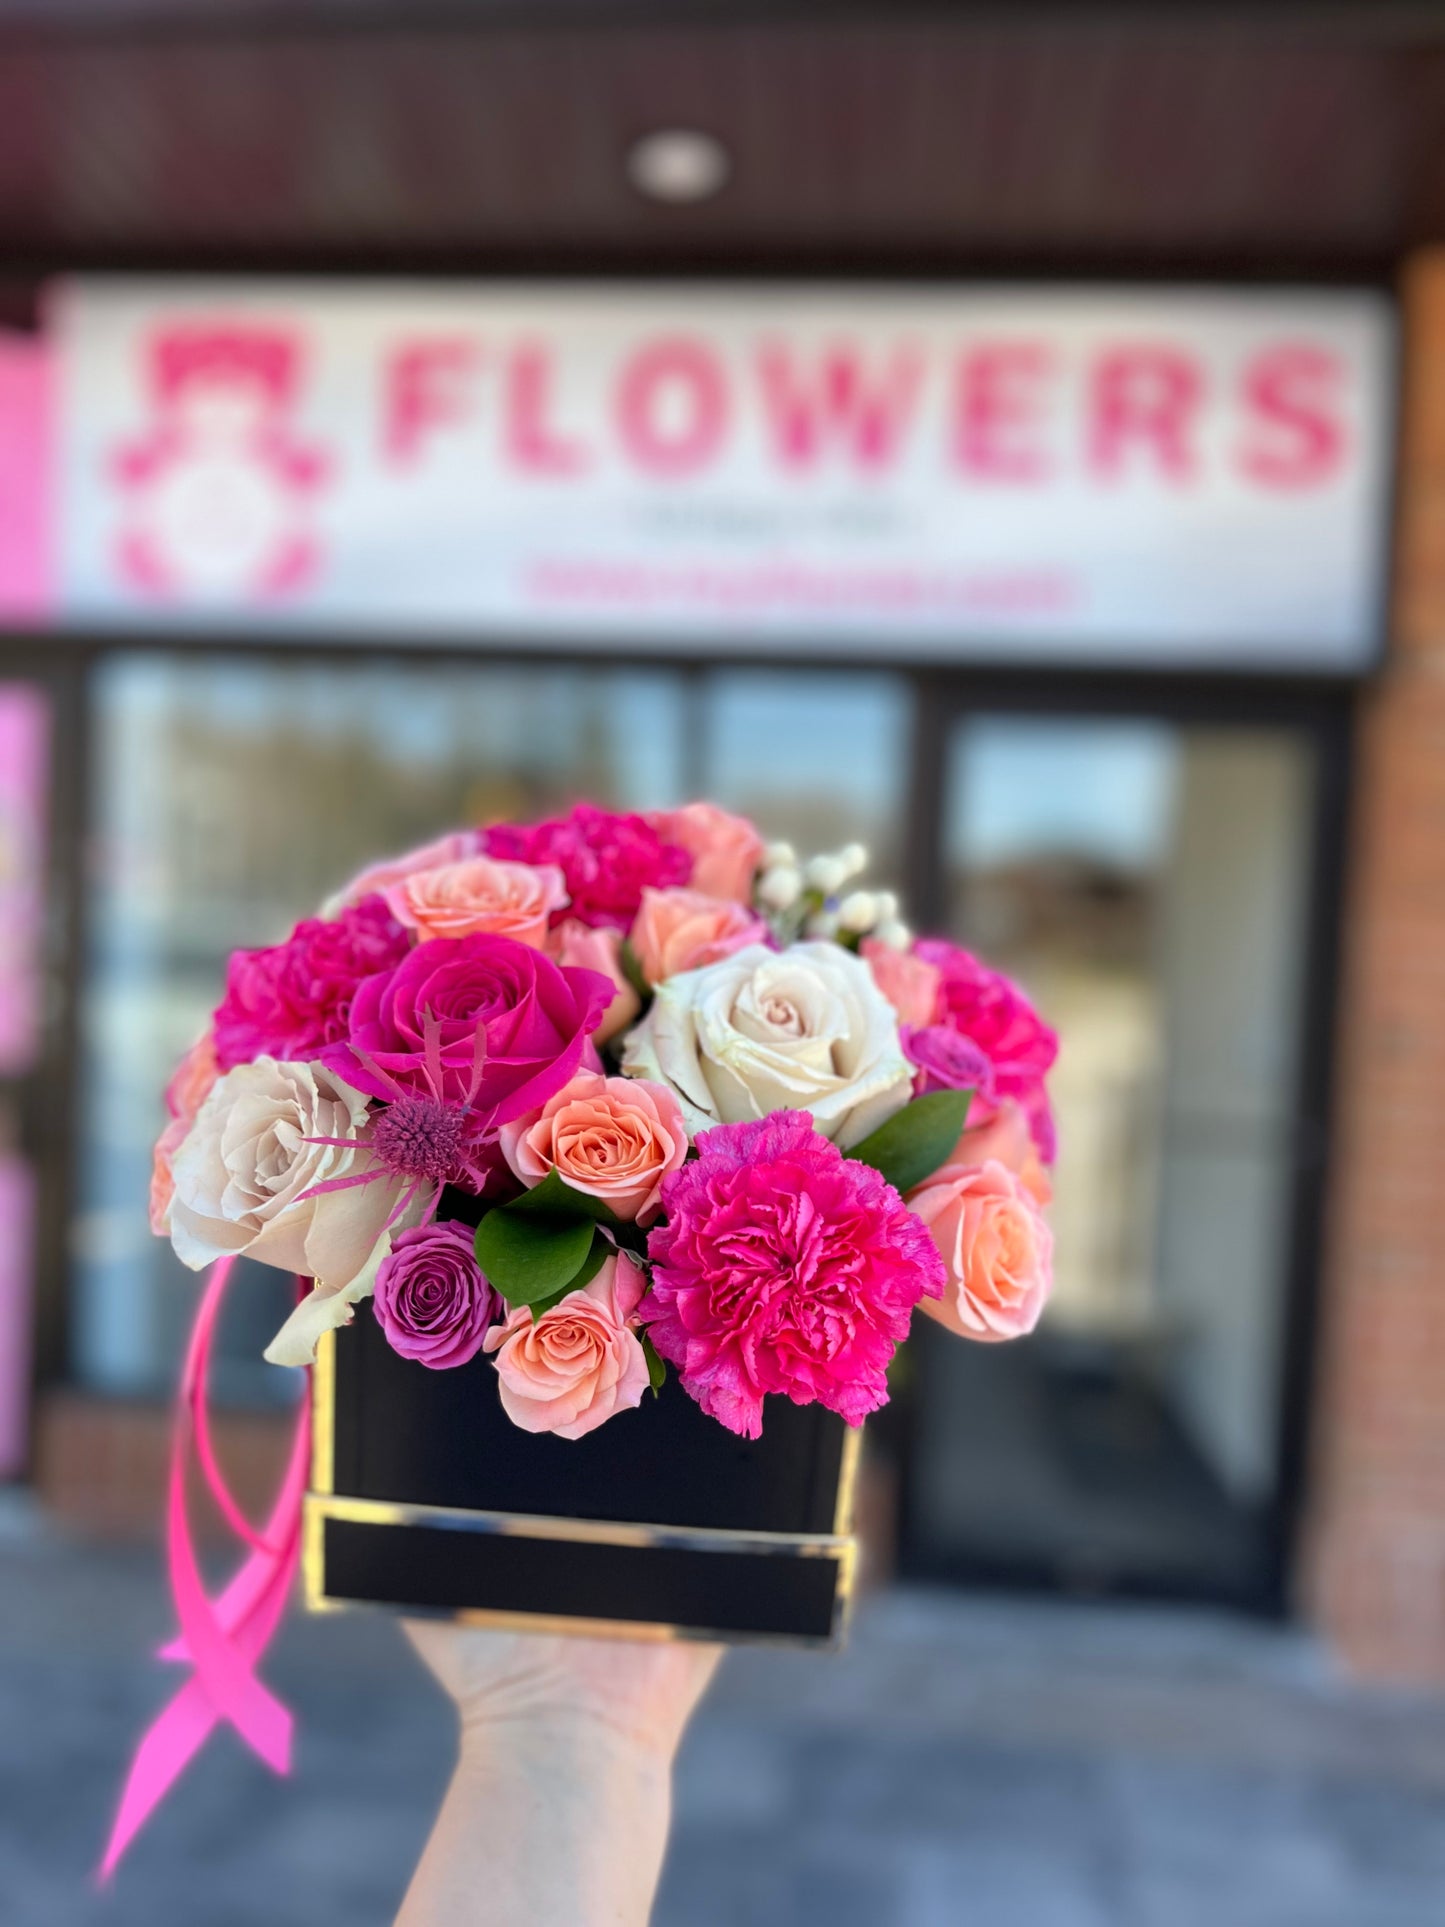 Fancy Floral Box - Toy Florist